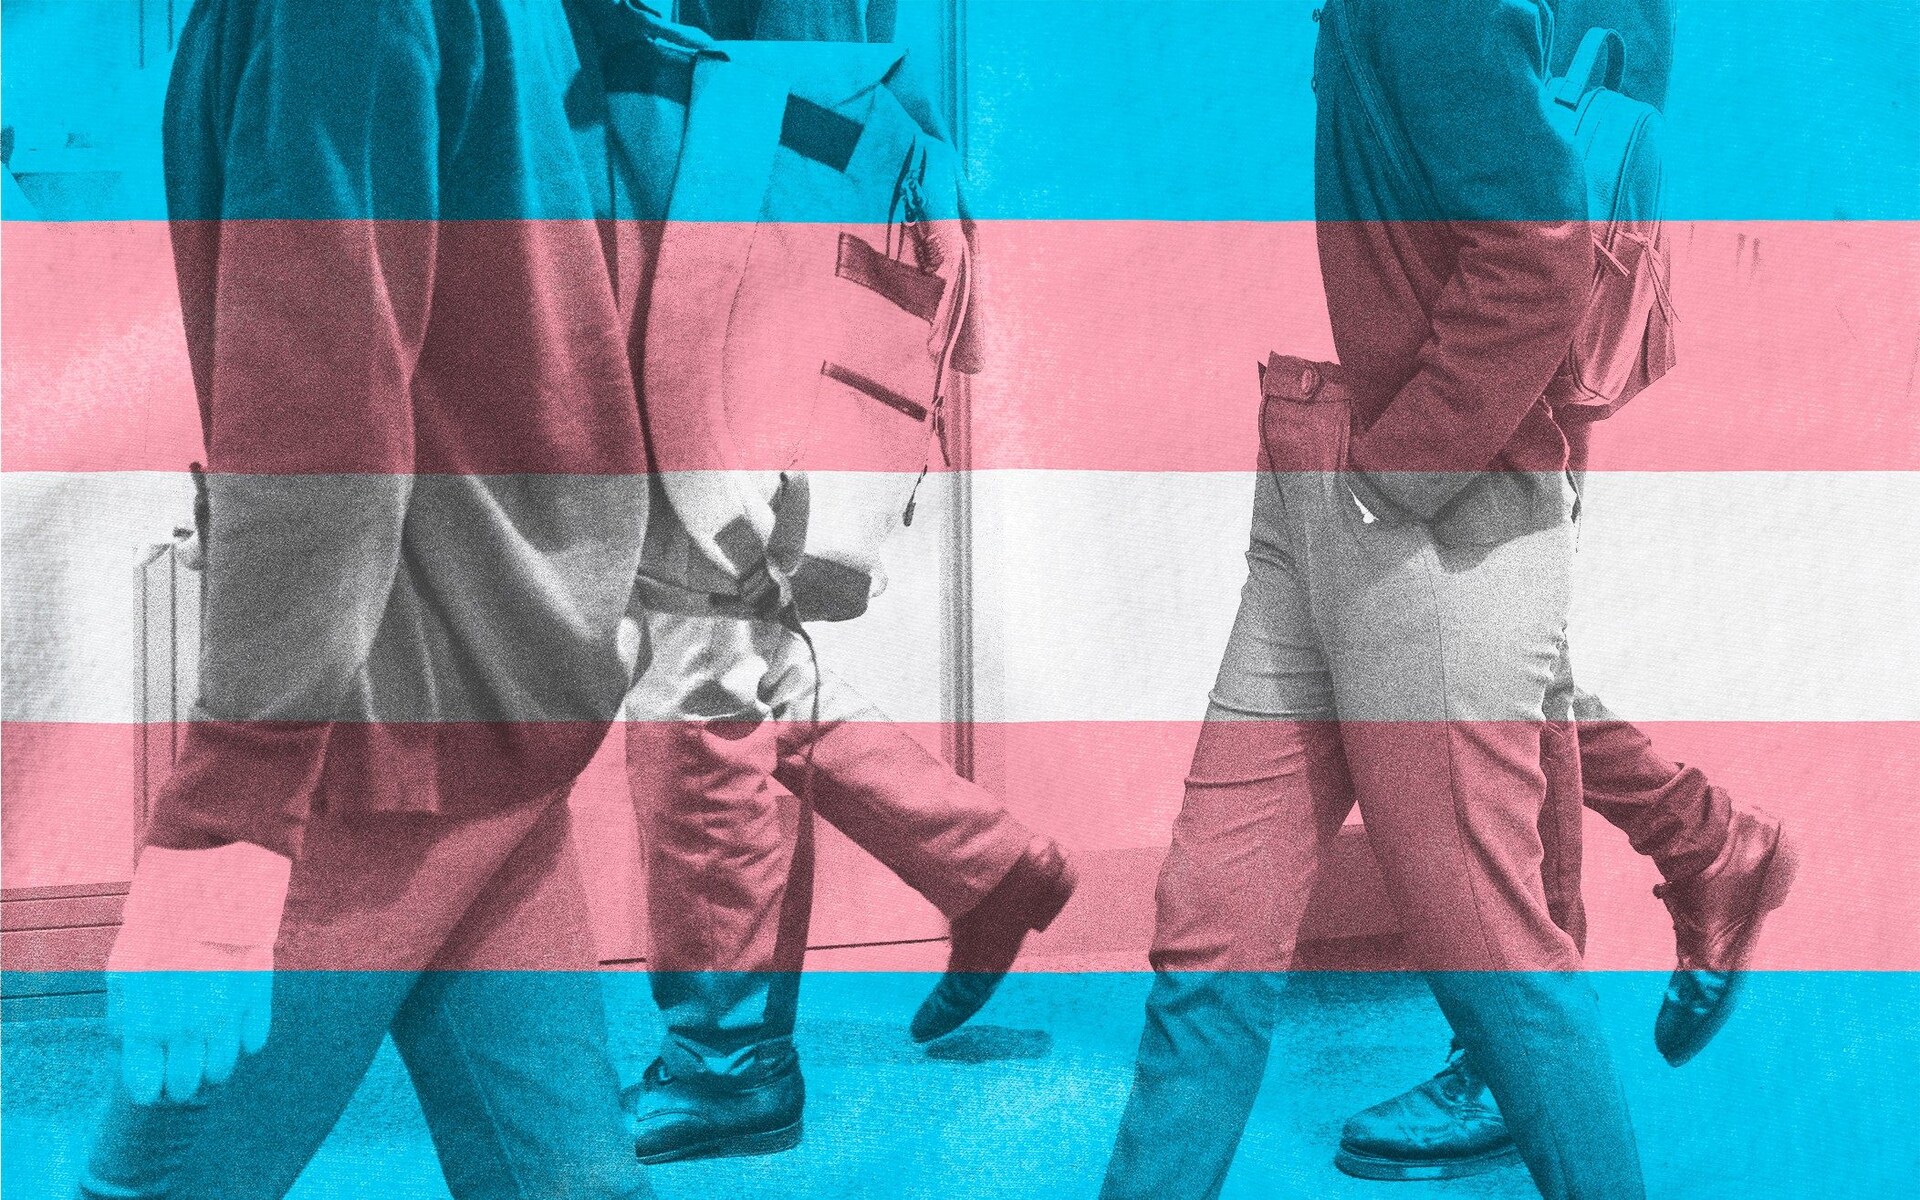 Plano ng NHS na mag-alok ng transgender na paggamot sa mga bata kasing edad pito